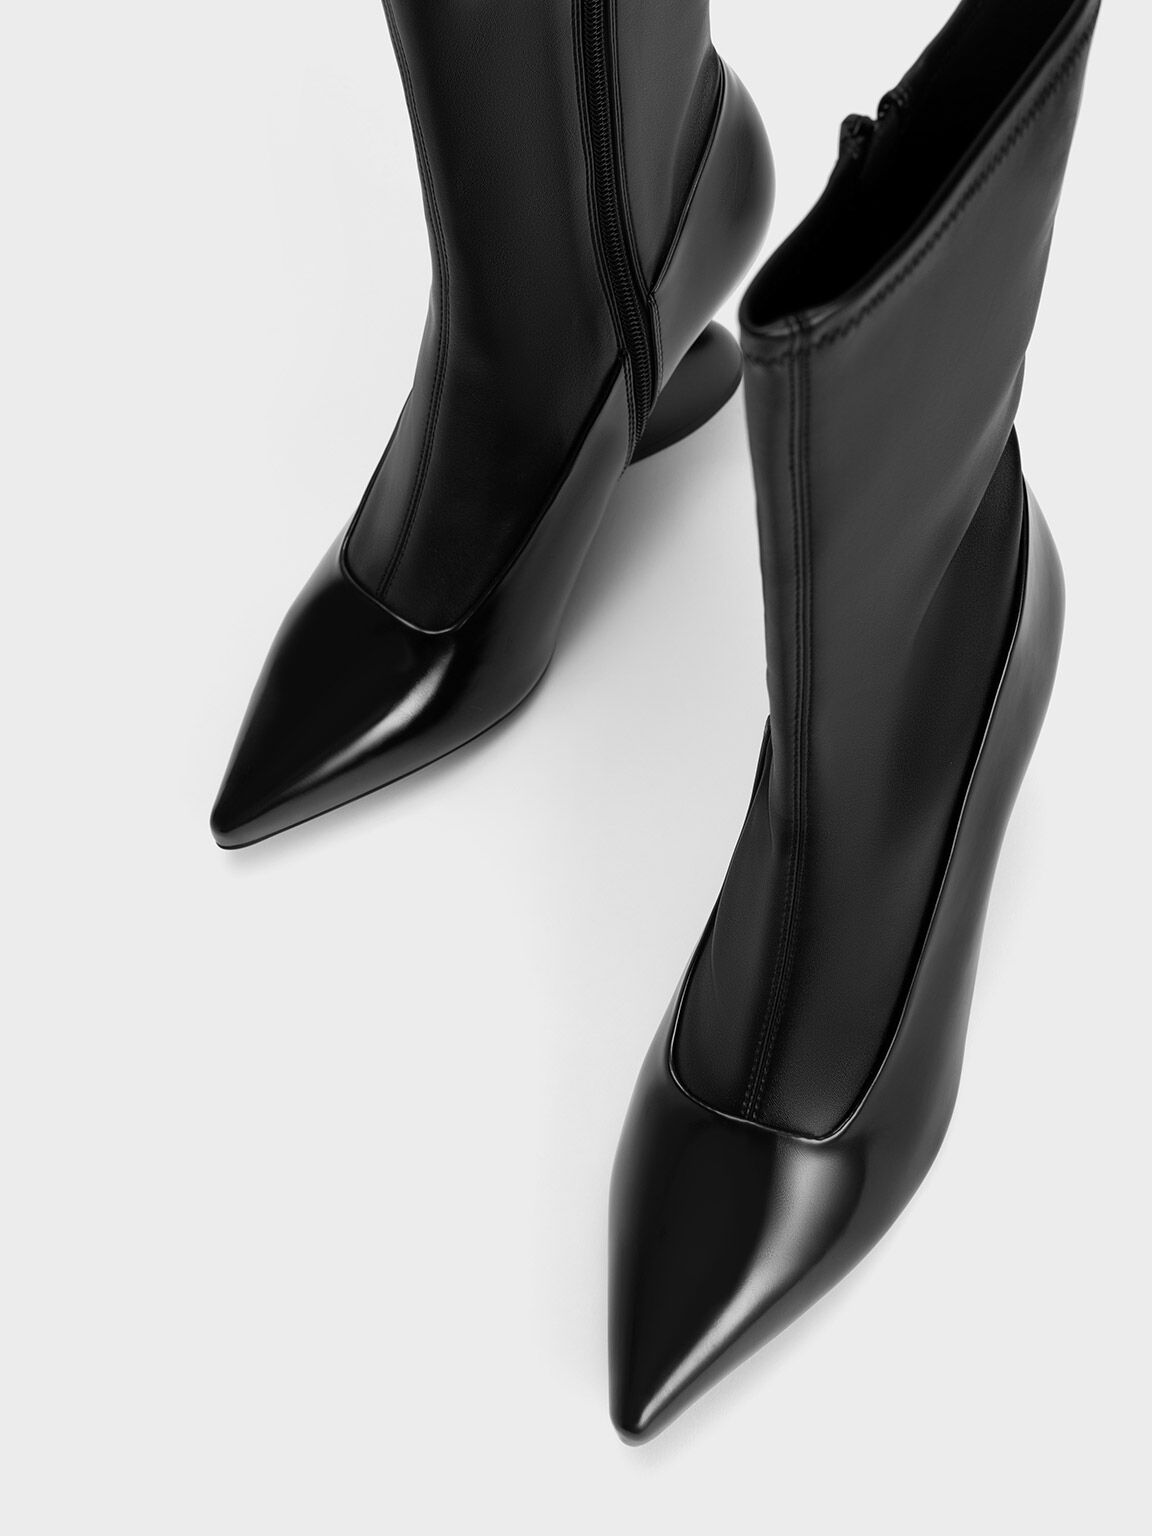 Black Zania Sculptural Heel Boots & US